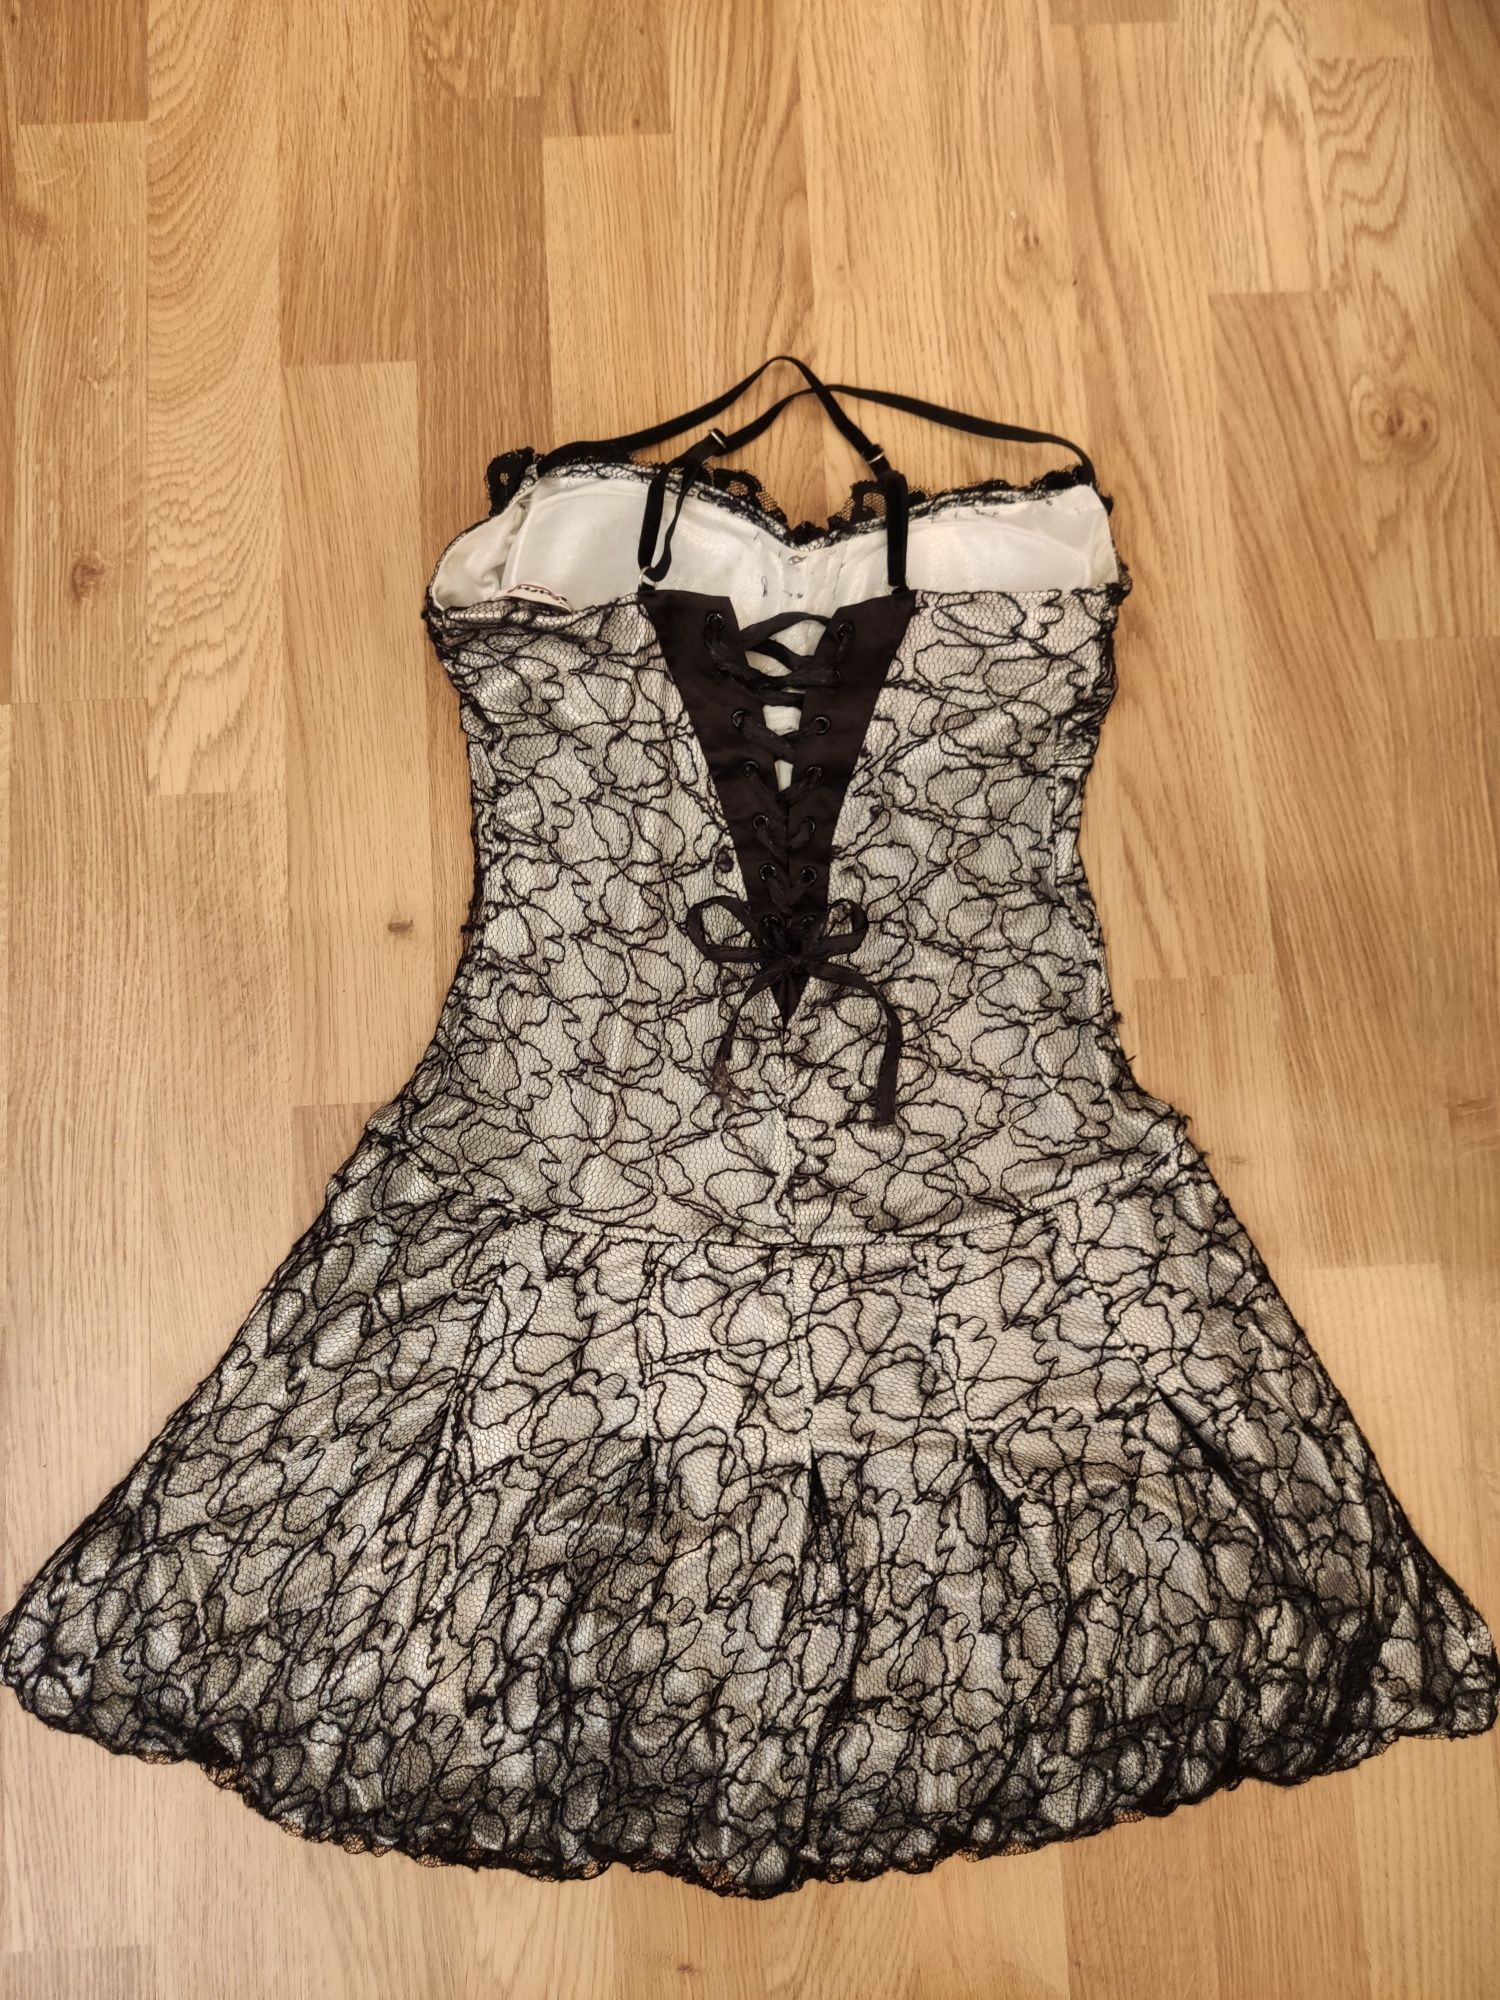 Платье Seam сетка серебристо чёрное праздничное выпускное